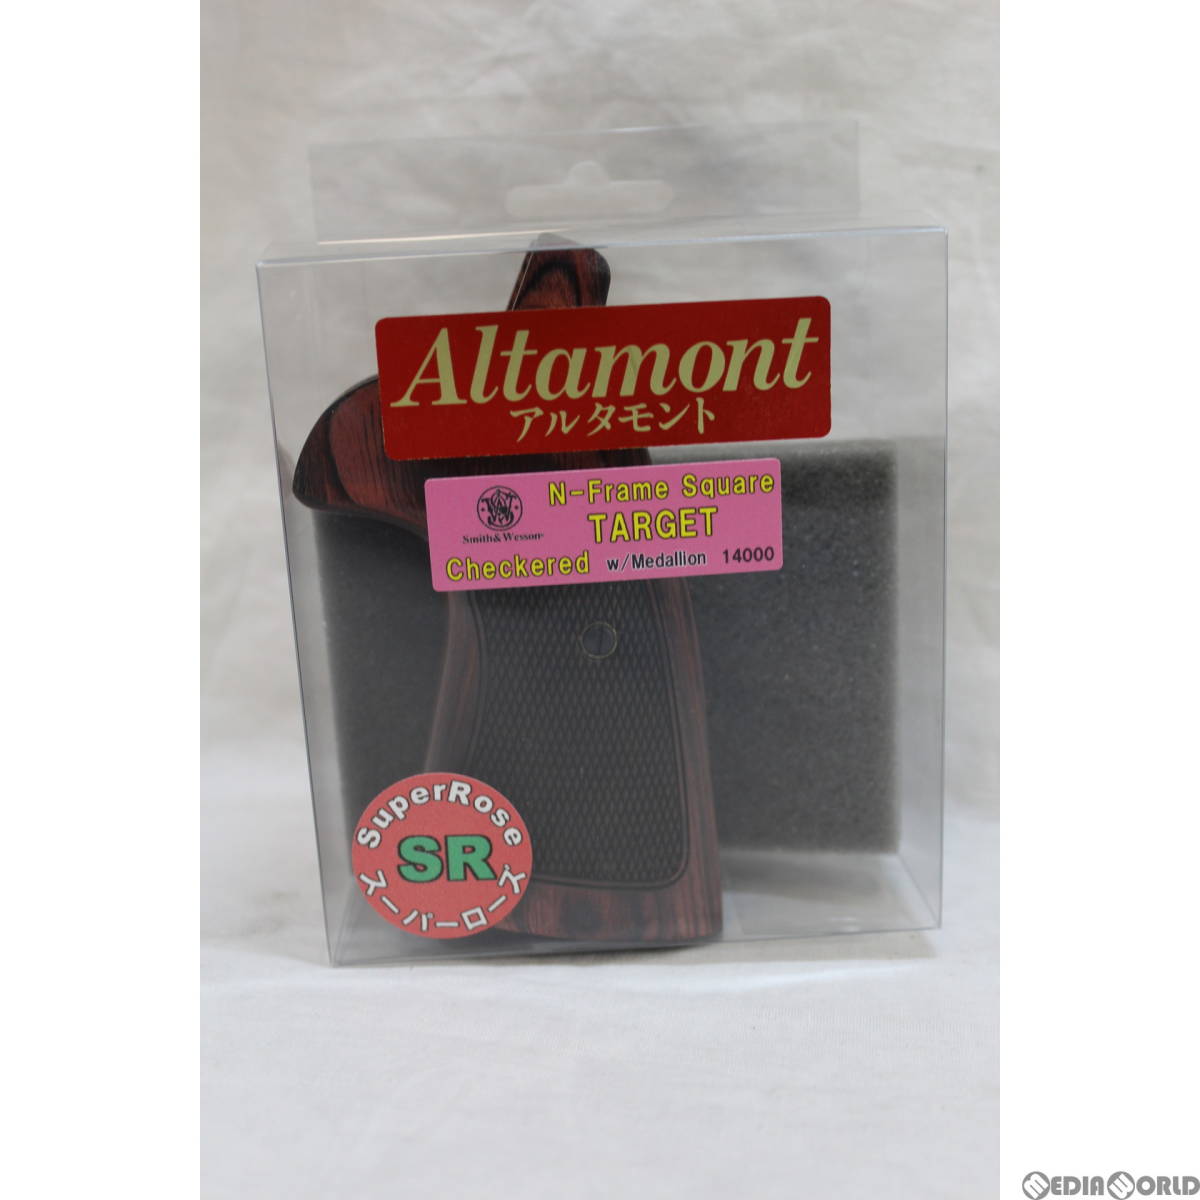 Altamont(アルタモント) S&W(スミスアンドウェッソン) Nフレームスクエア用 ターゲット・チェッカー・メダリオン付・SR赤系 グリップ パーツ